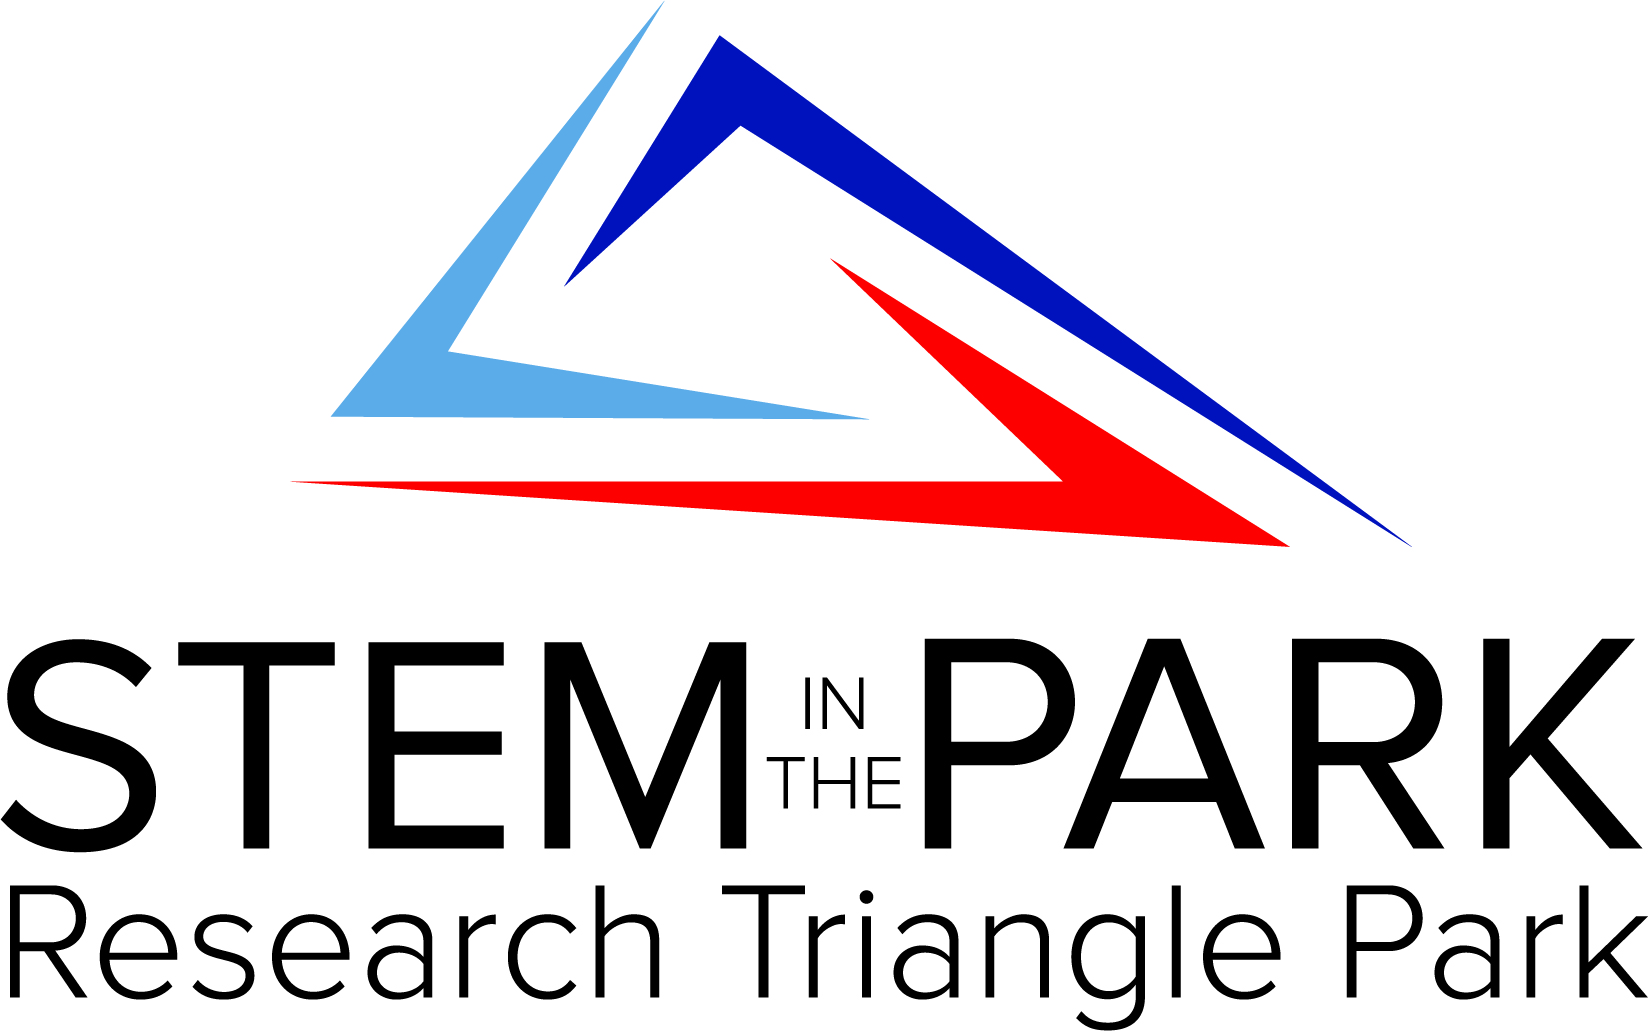 STEM logo